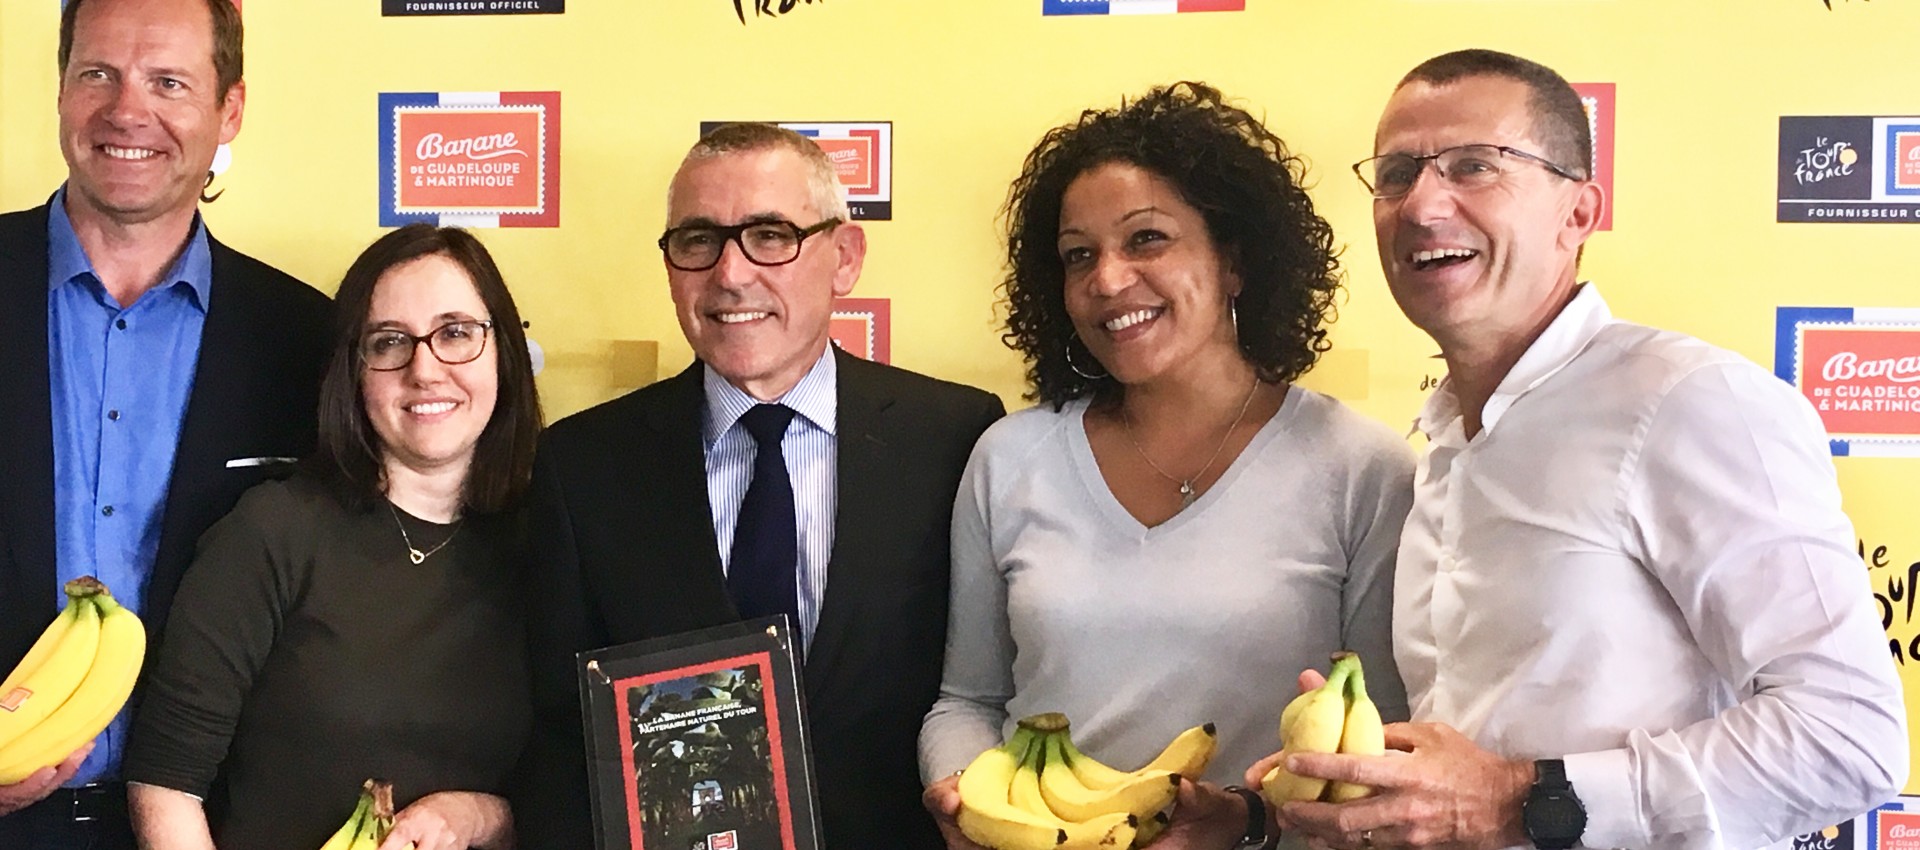 2018 - La banane française est fournisseur officiel du tour de france